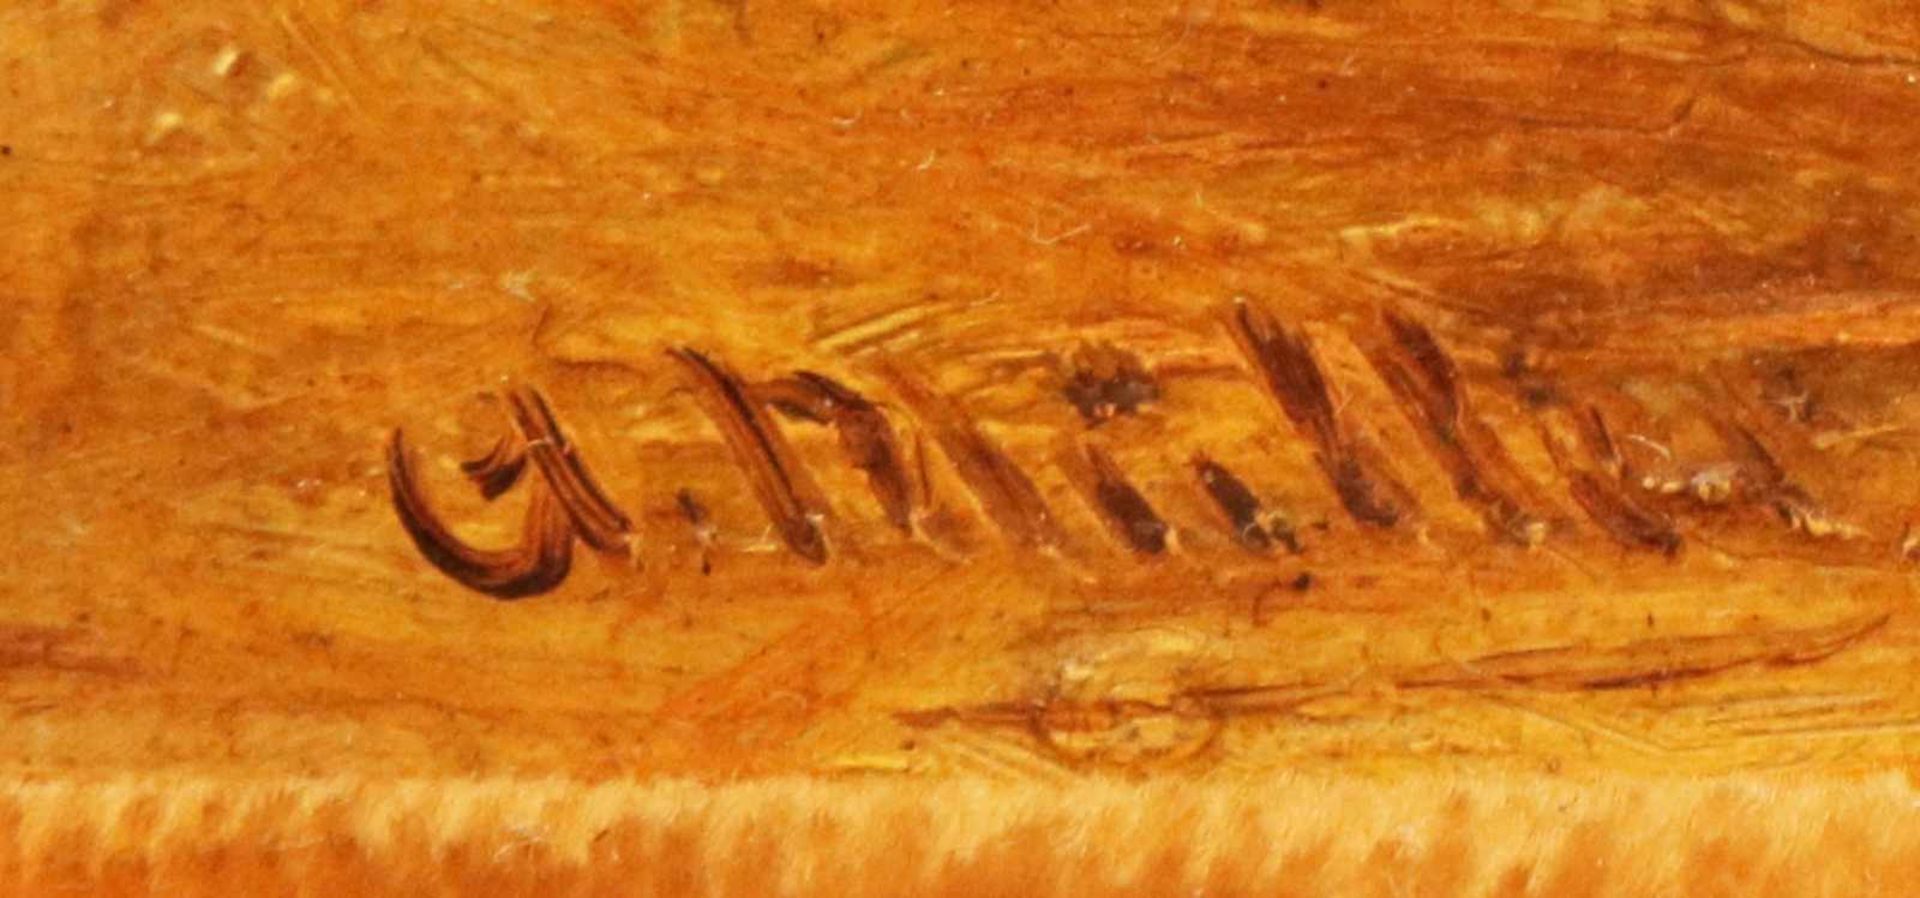 UNBEKANNTER KÜNSTLER Öl auf Holz, ¨Pferdeporträt ¨ (brauner Hengst), unten rechts signiert ¨G. - Bild 2 aus 2